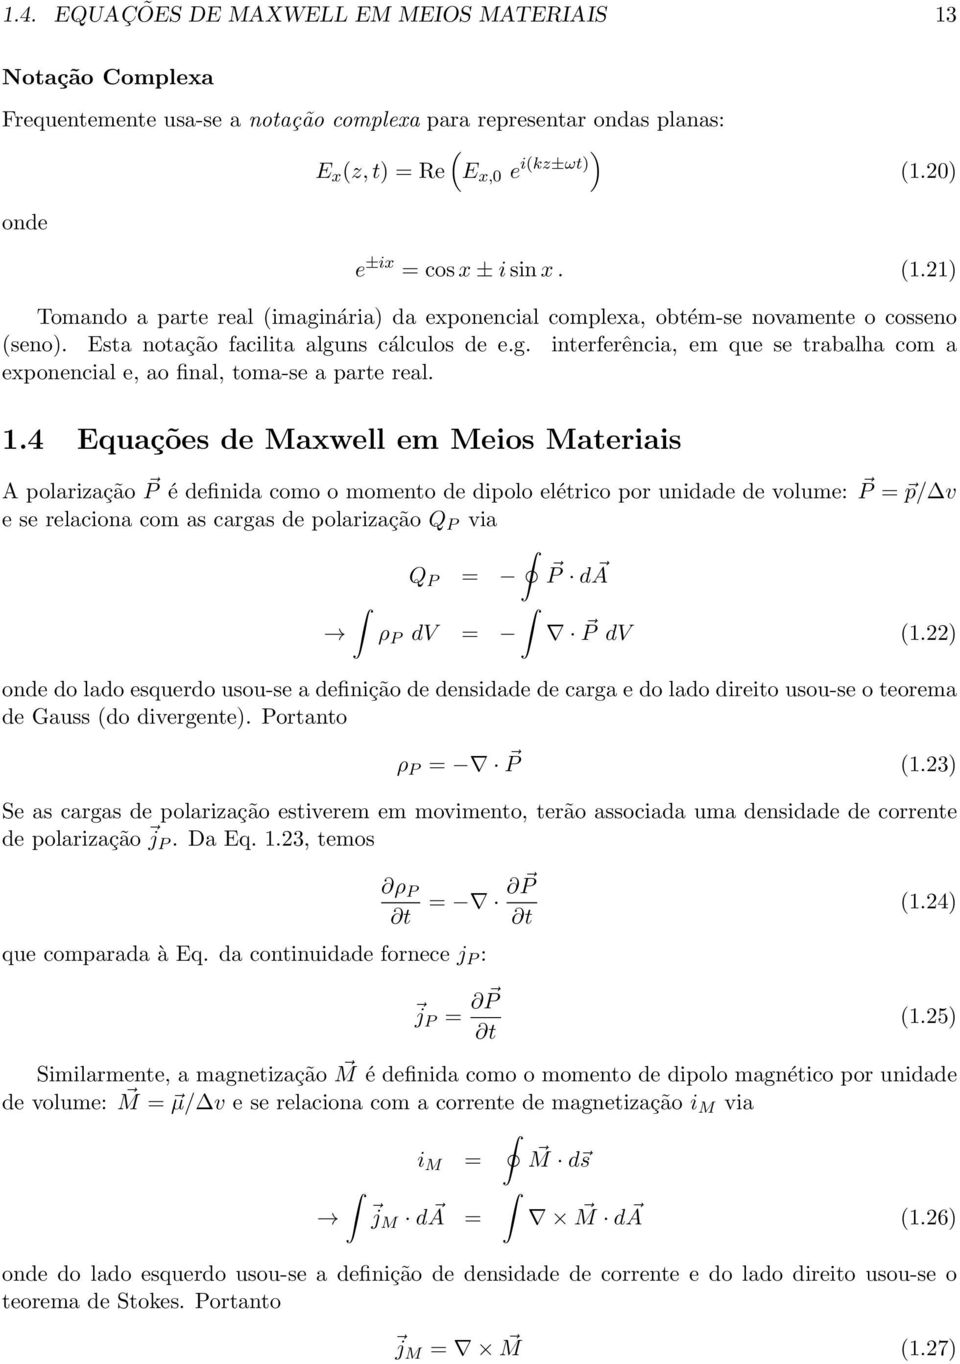 1.4 Equações de Maxwell em Meios Materiais A polarização P é definida como o momento de dipolo elétrico por unidade de volume: P = p/ v e se relaciona com as cargas de polarização Q P via Q P = P da